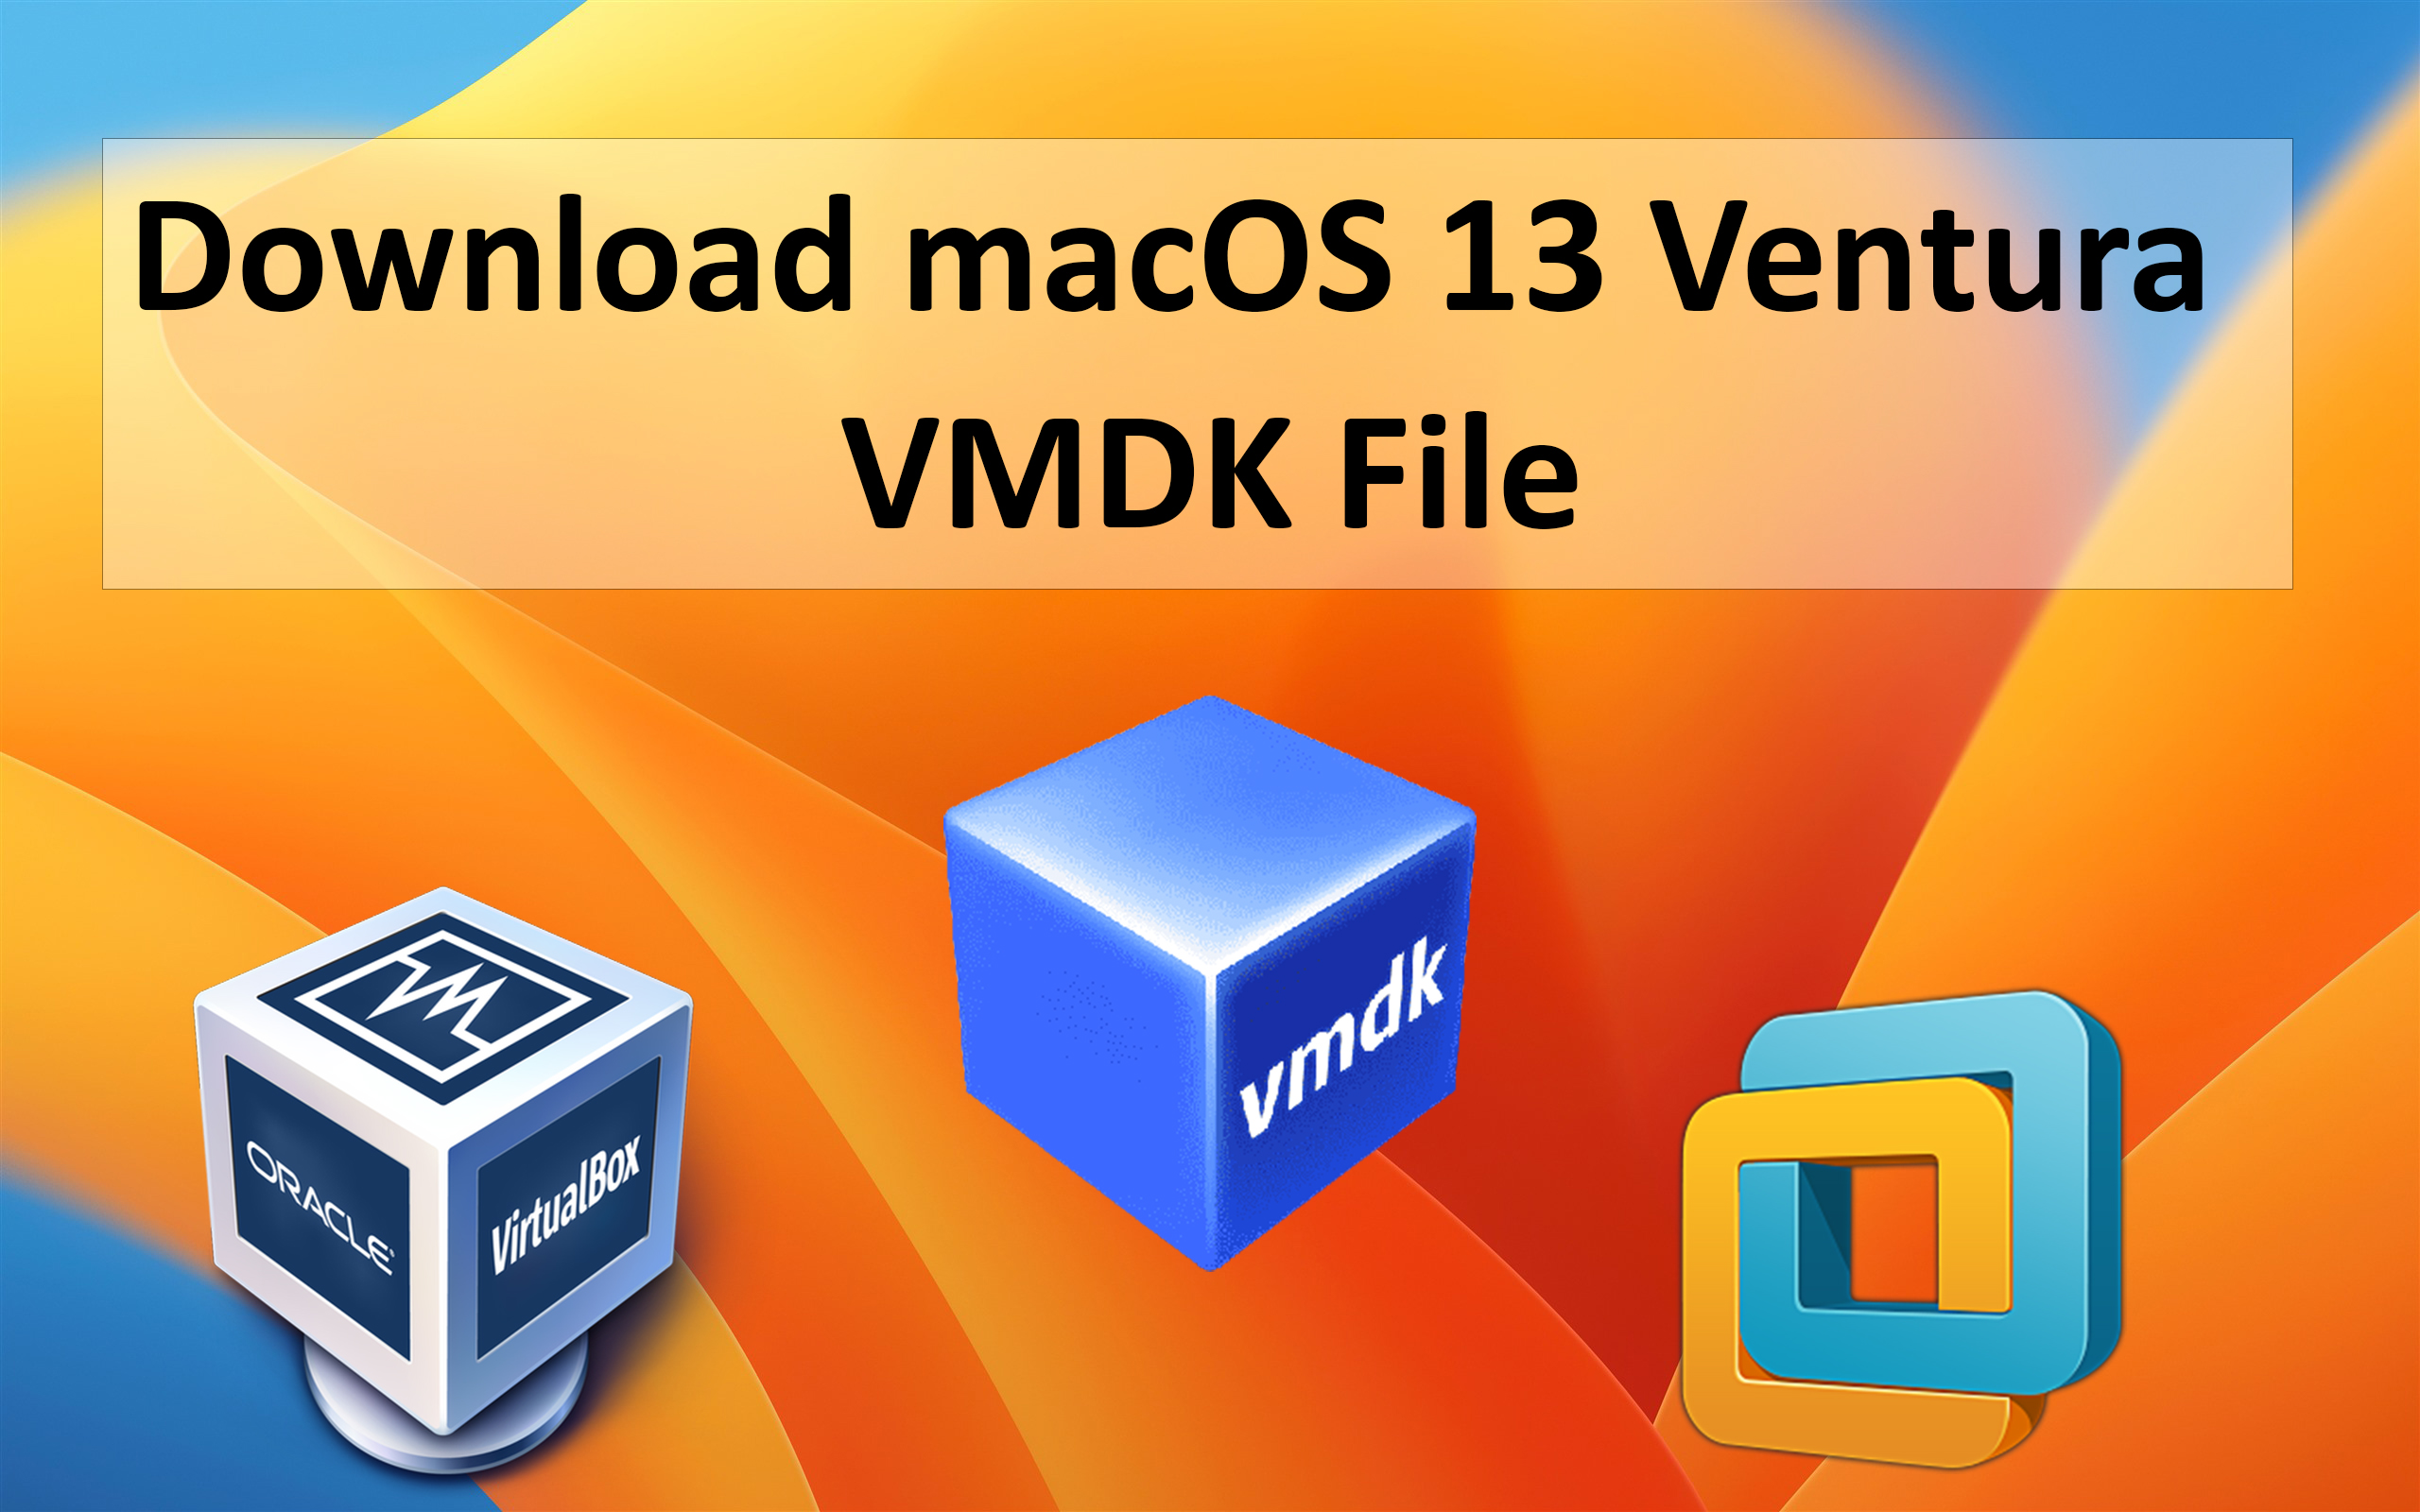 Macos ventura vmdk torrent download paragon ntfs for mac full free